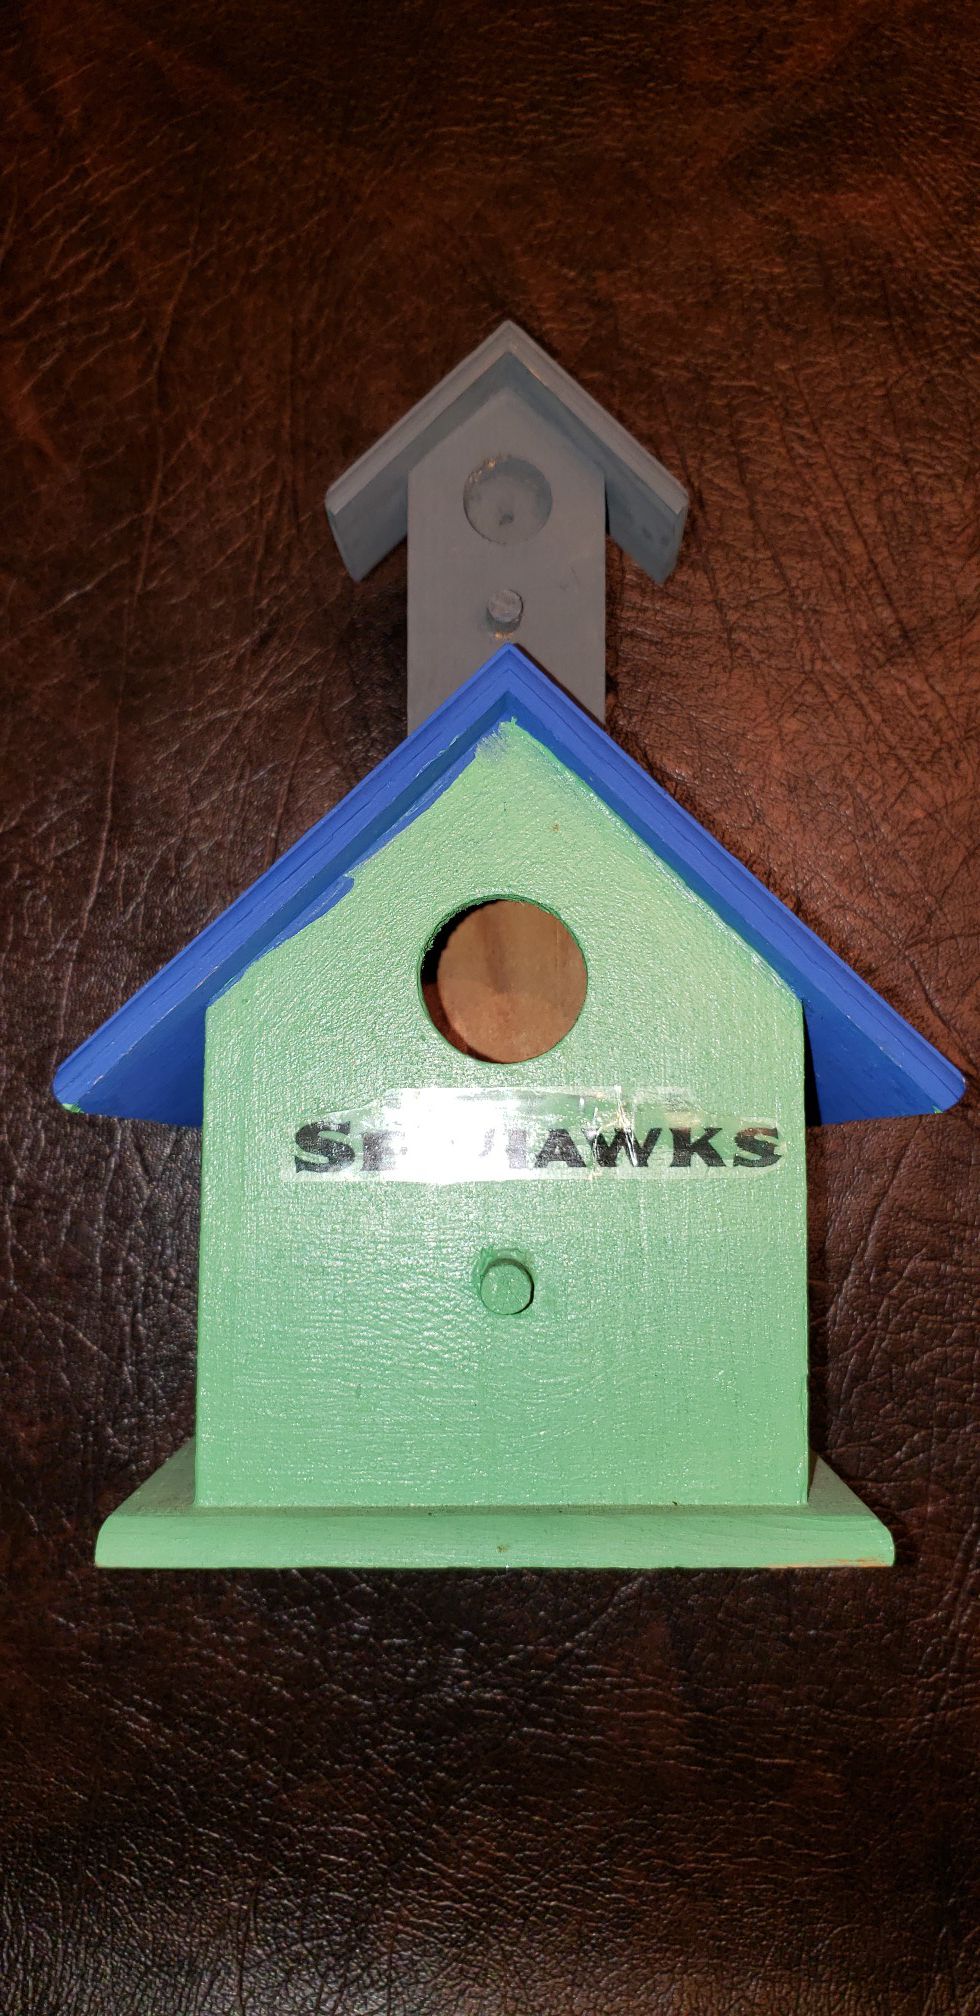 Cool little Birdhouse for the Seattle Seahawks Fan...